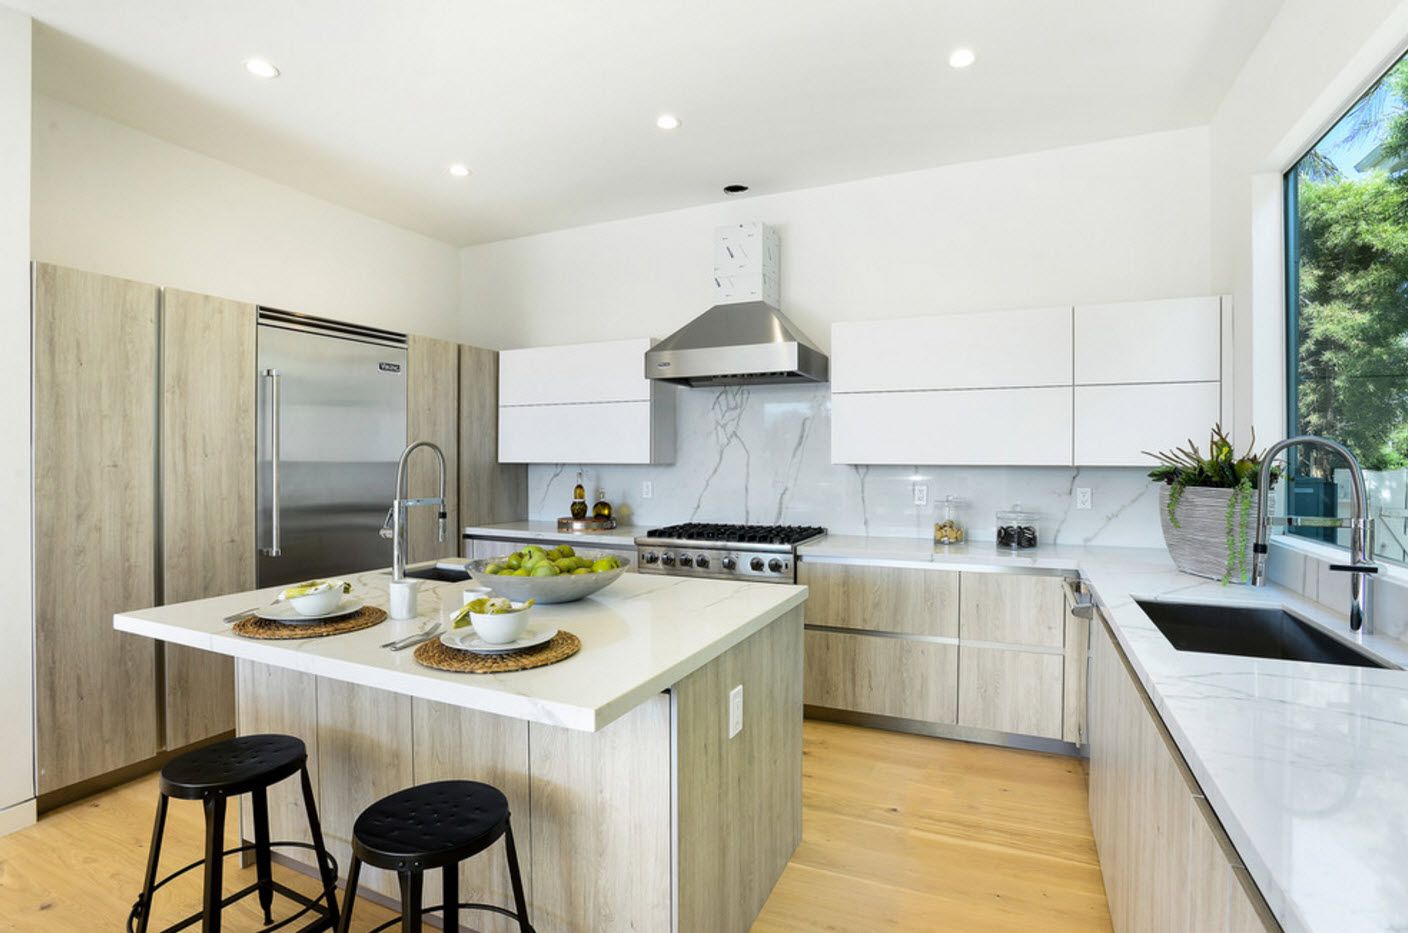 150 sq ft kitchen design